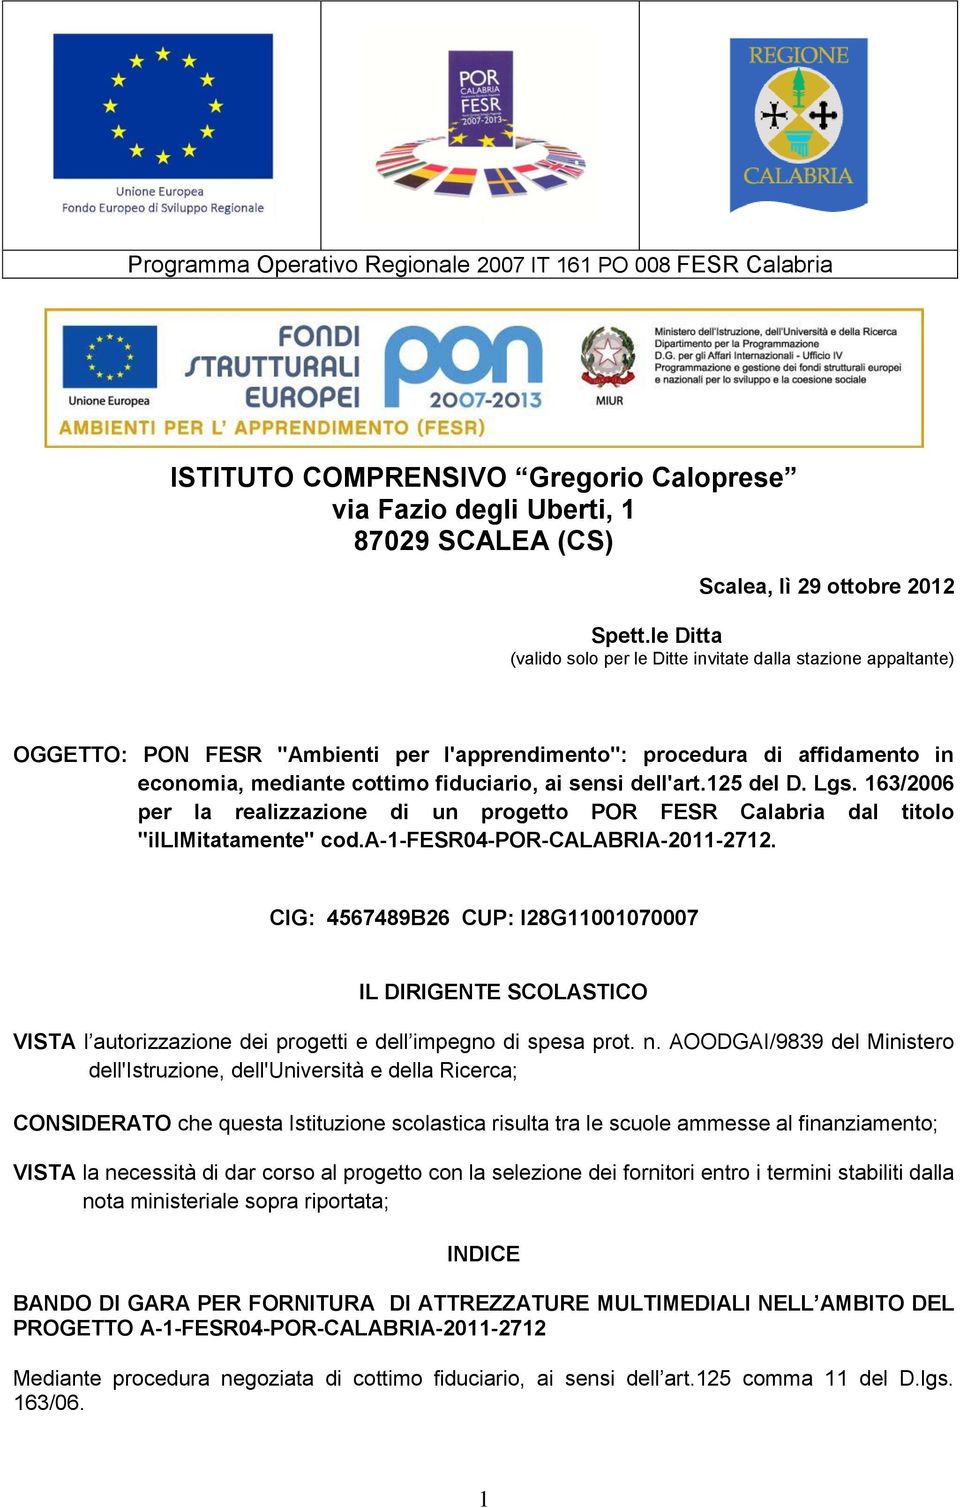 dell'art.125 del D. Lgs. 163/2006 per la realizzazione di un progetto POR FESR Calabria dal titolo "illimitatamente" cod.a-1-fesr04-por-calabria-2011-2712.